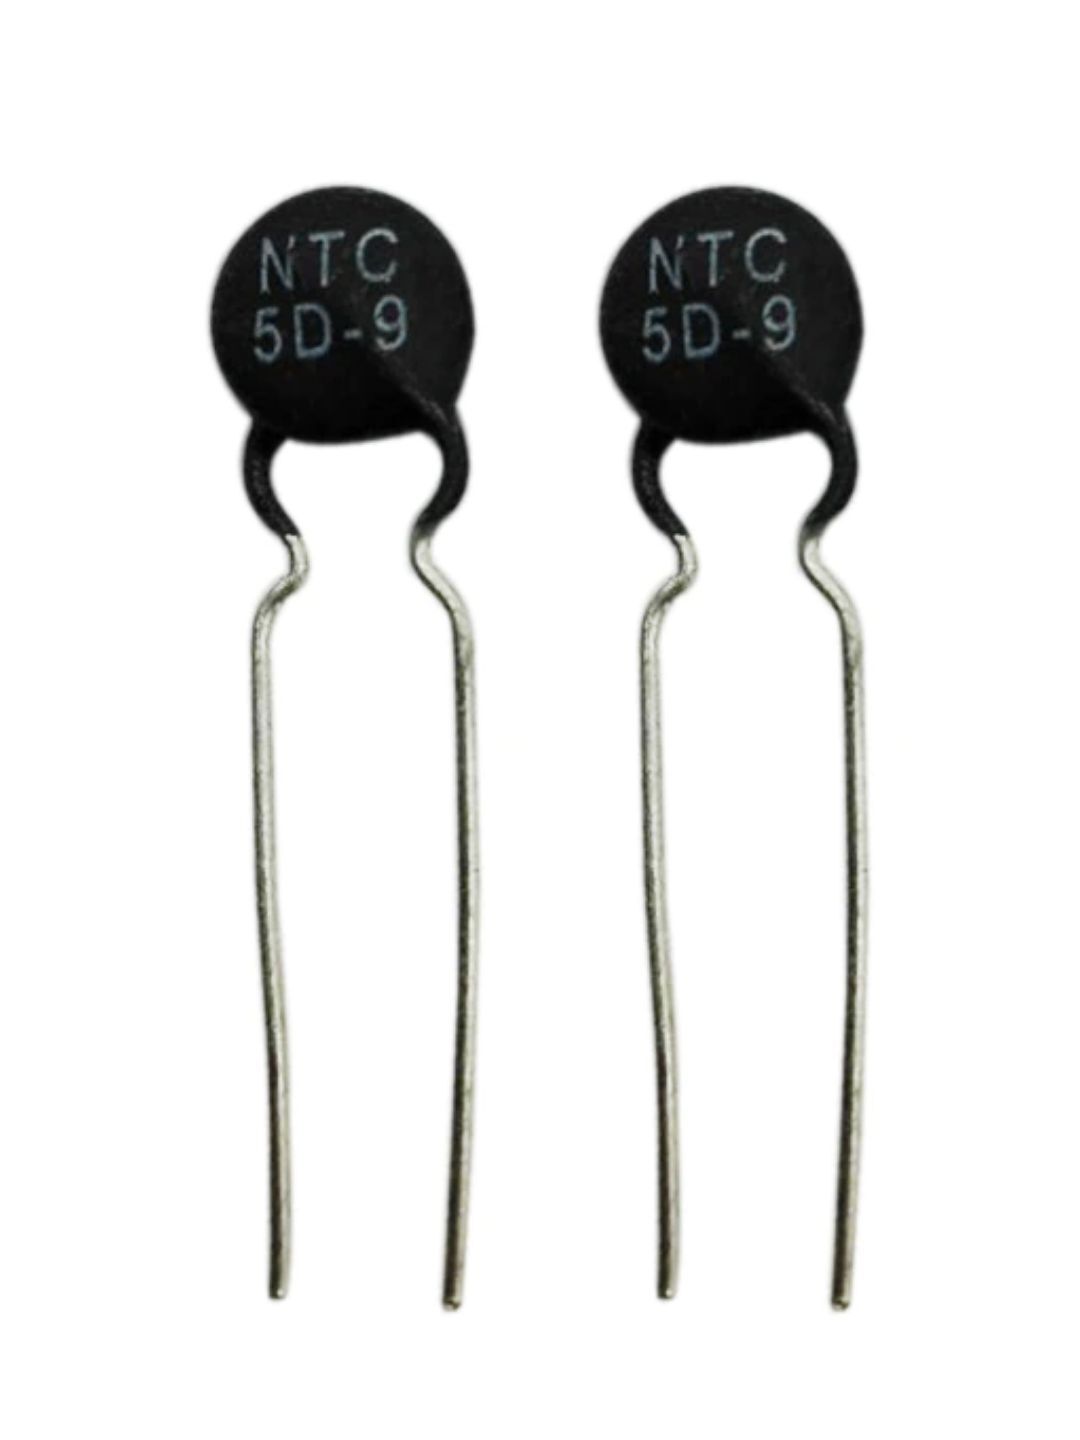 Ntc 5d 9. Термистор NTC 5d 1457. NTC 5d 647. Терморезистор NTC 22d-9. NTC 5d-9 Datasheet.